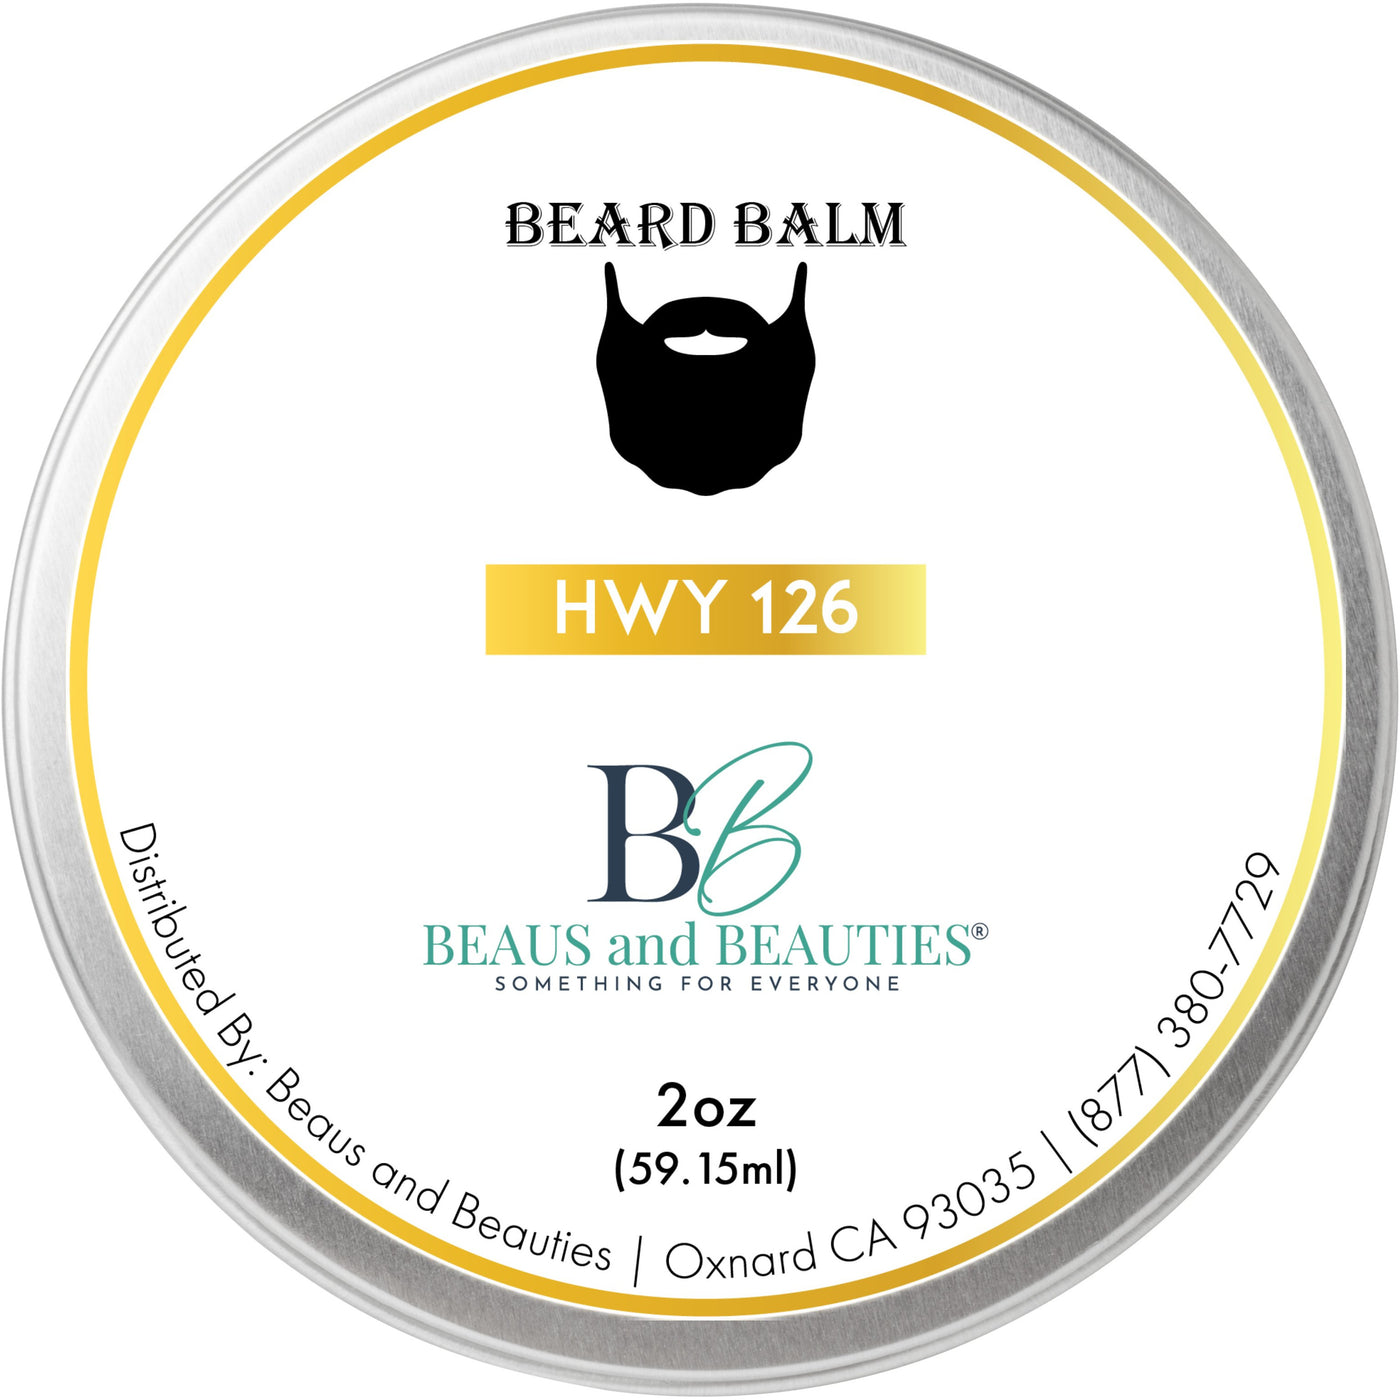 2 oz Beard Balm HWY 126